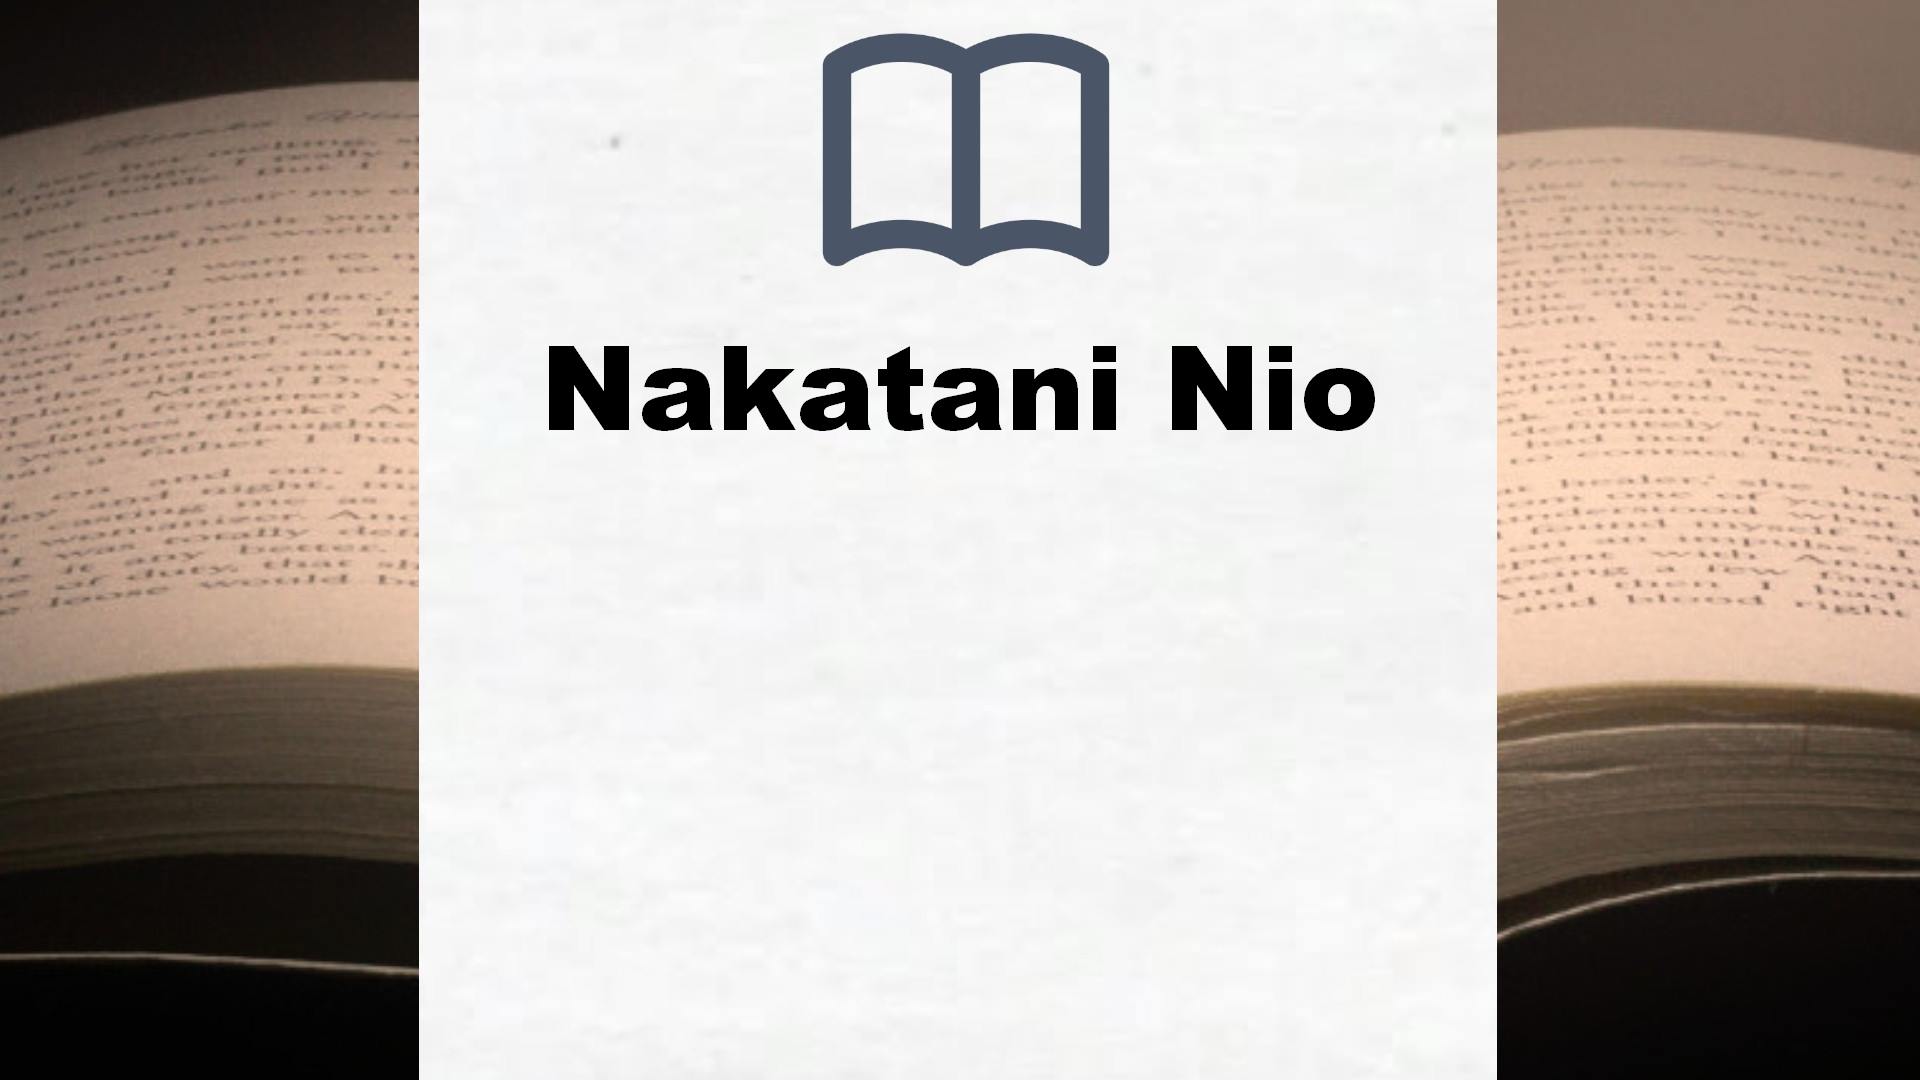 Libros Nakatani Nio